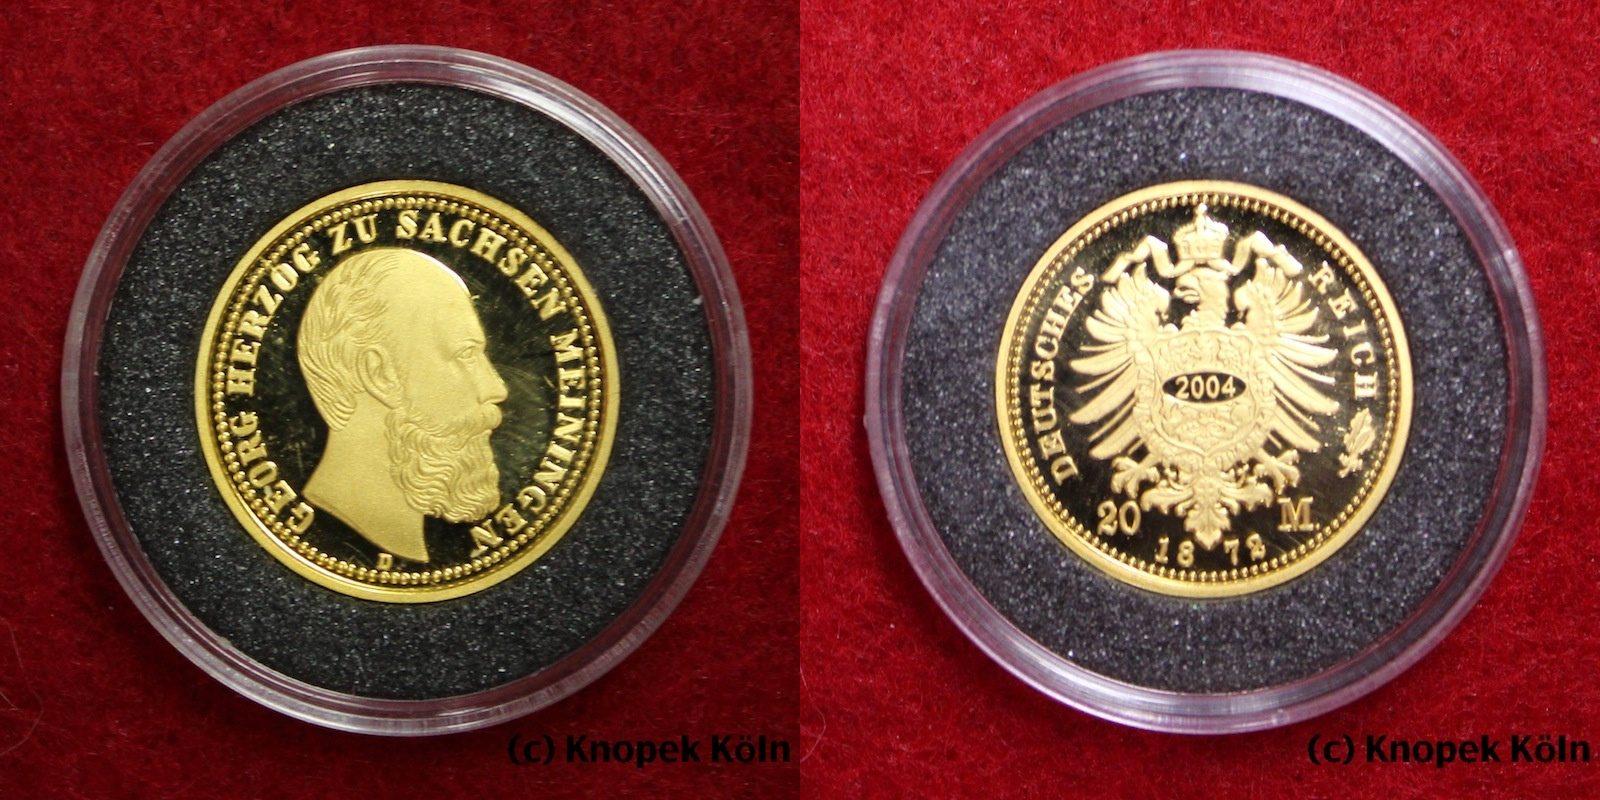 Foto Sachsen-Meiningen / Deutsches Reich 20 Mark Gold 2004 Np